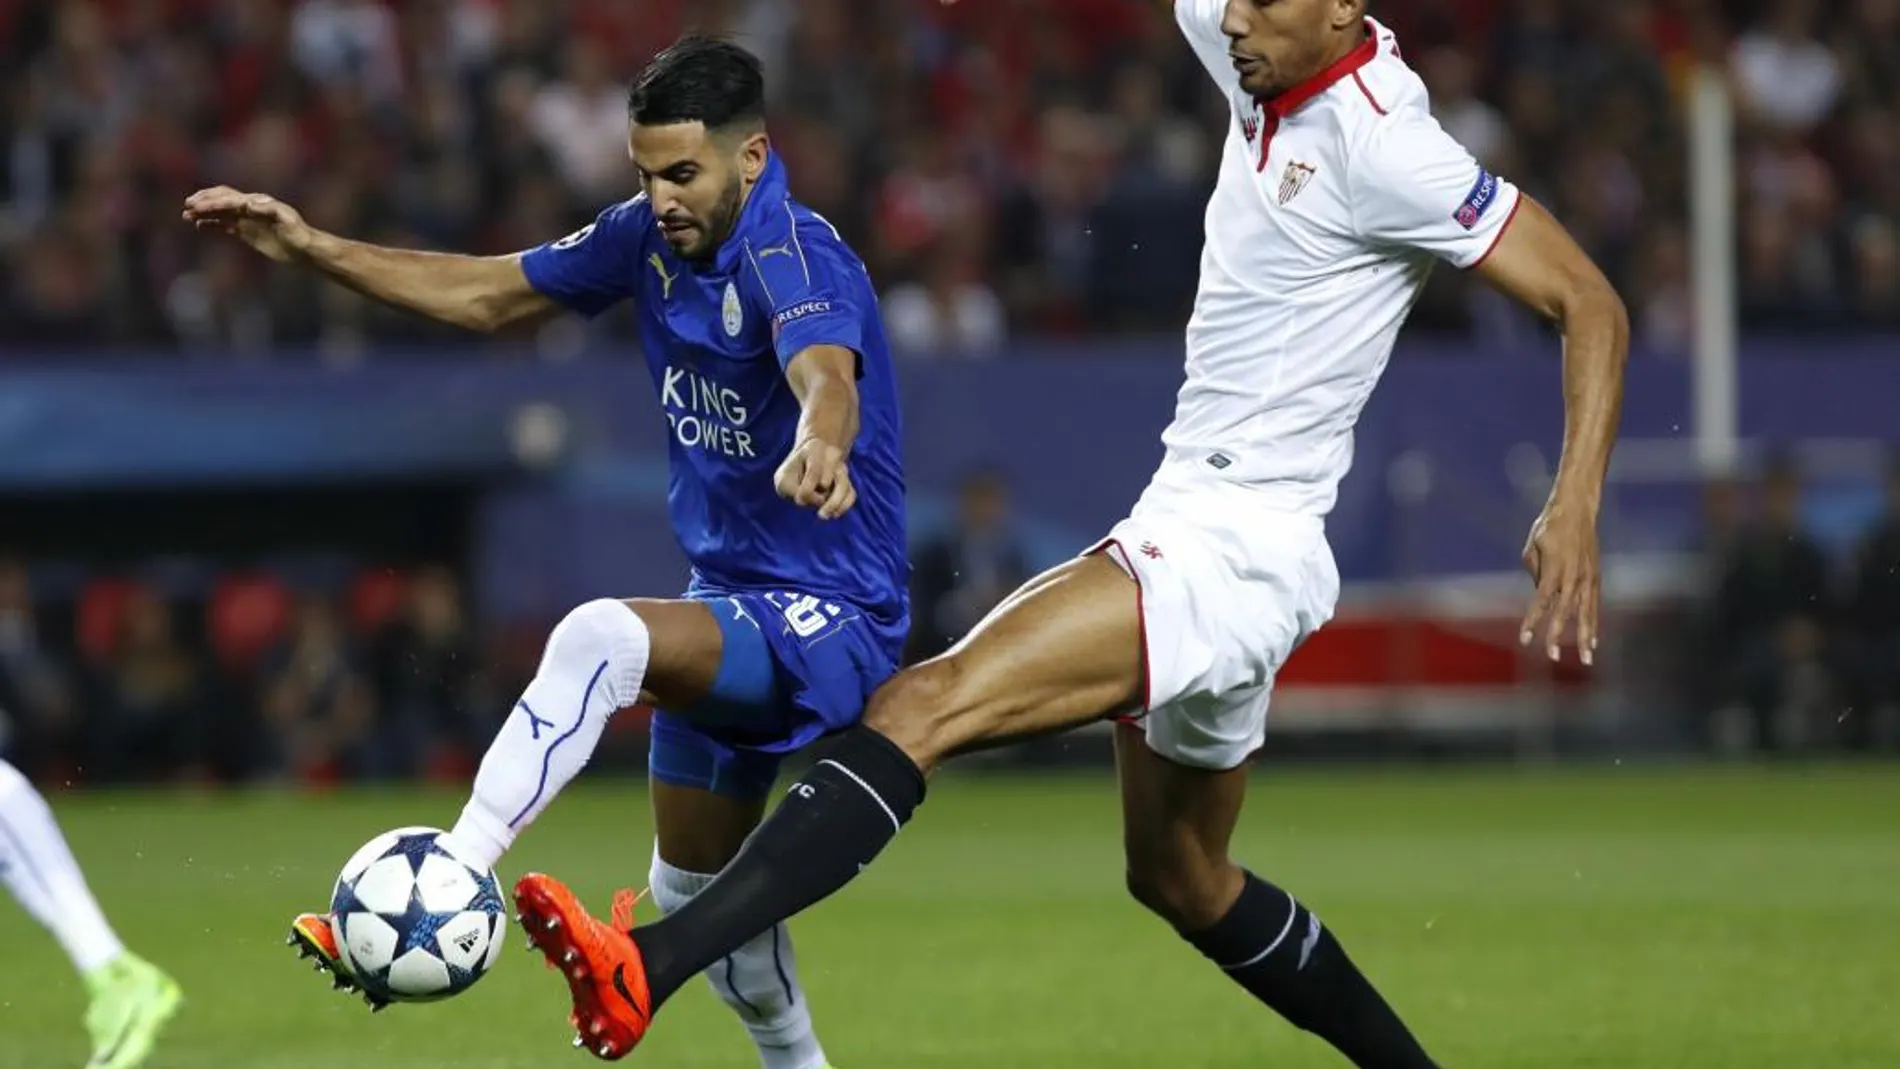 El centrocampista francés del Sevilla FC Steven N'Zonzi lucha el balón con Riyad Mahrez, del Leicester